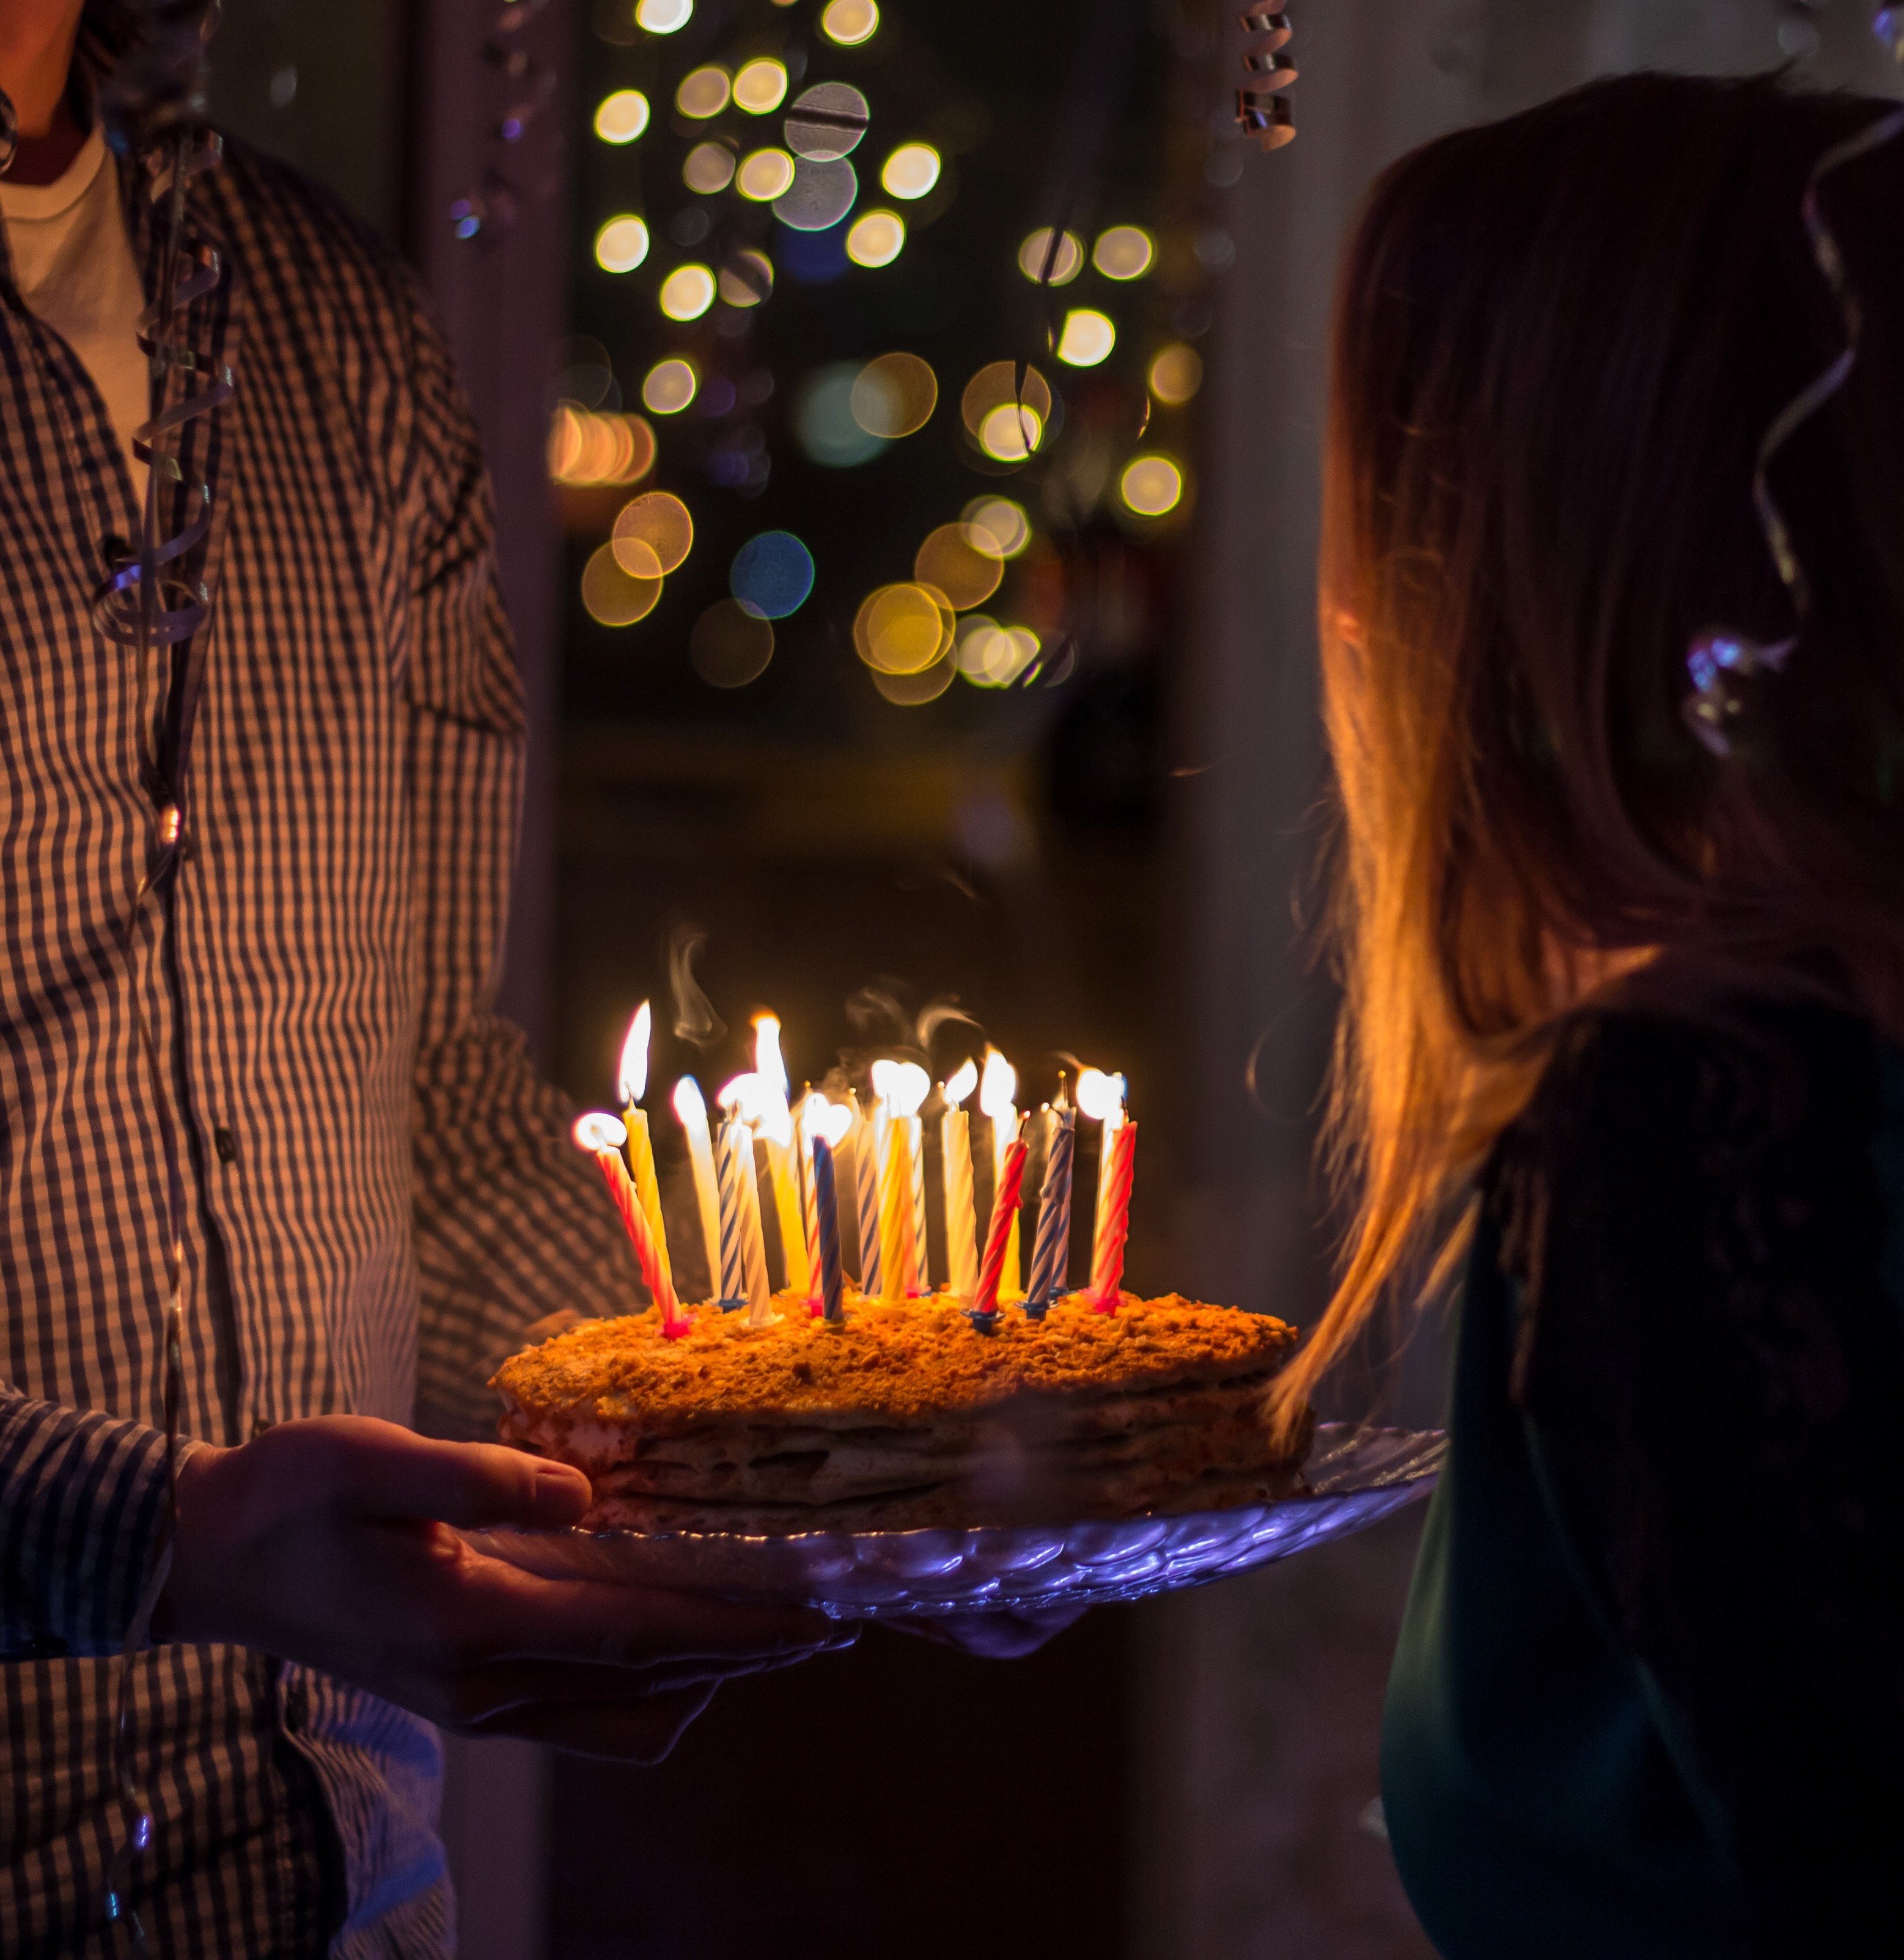 Pessoa segurando bolo com velas acesas e mulher de frente olhando para o bolo